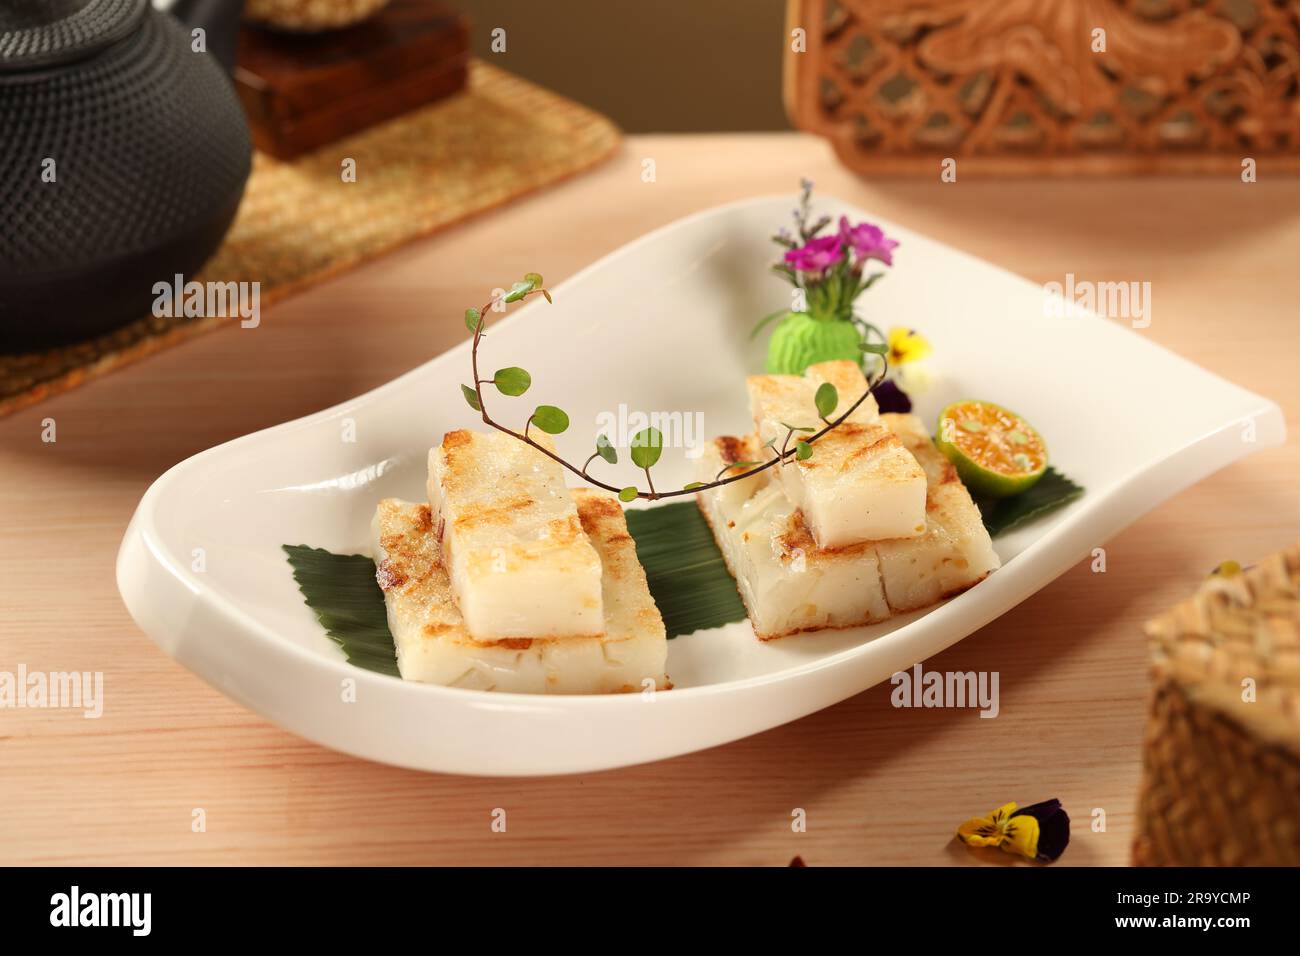 Le navet cuit à gâteau, nourriture chinoise Photo Stock - Alamy